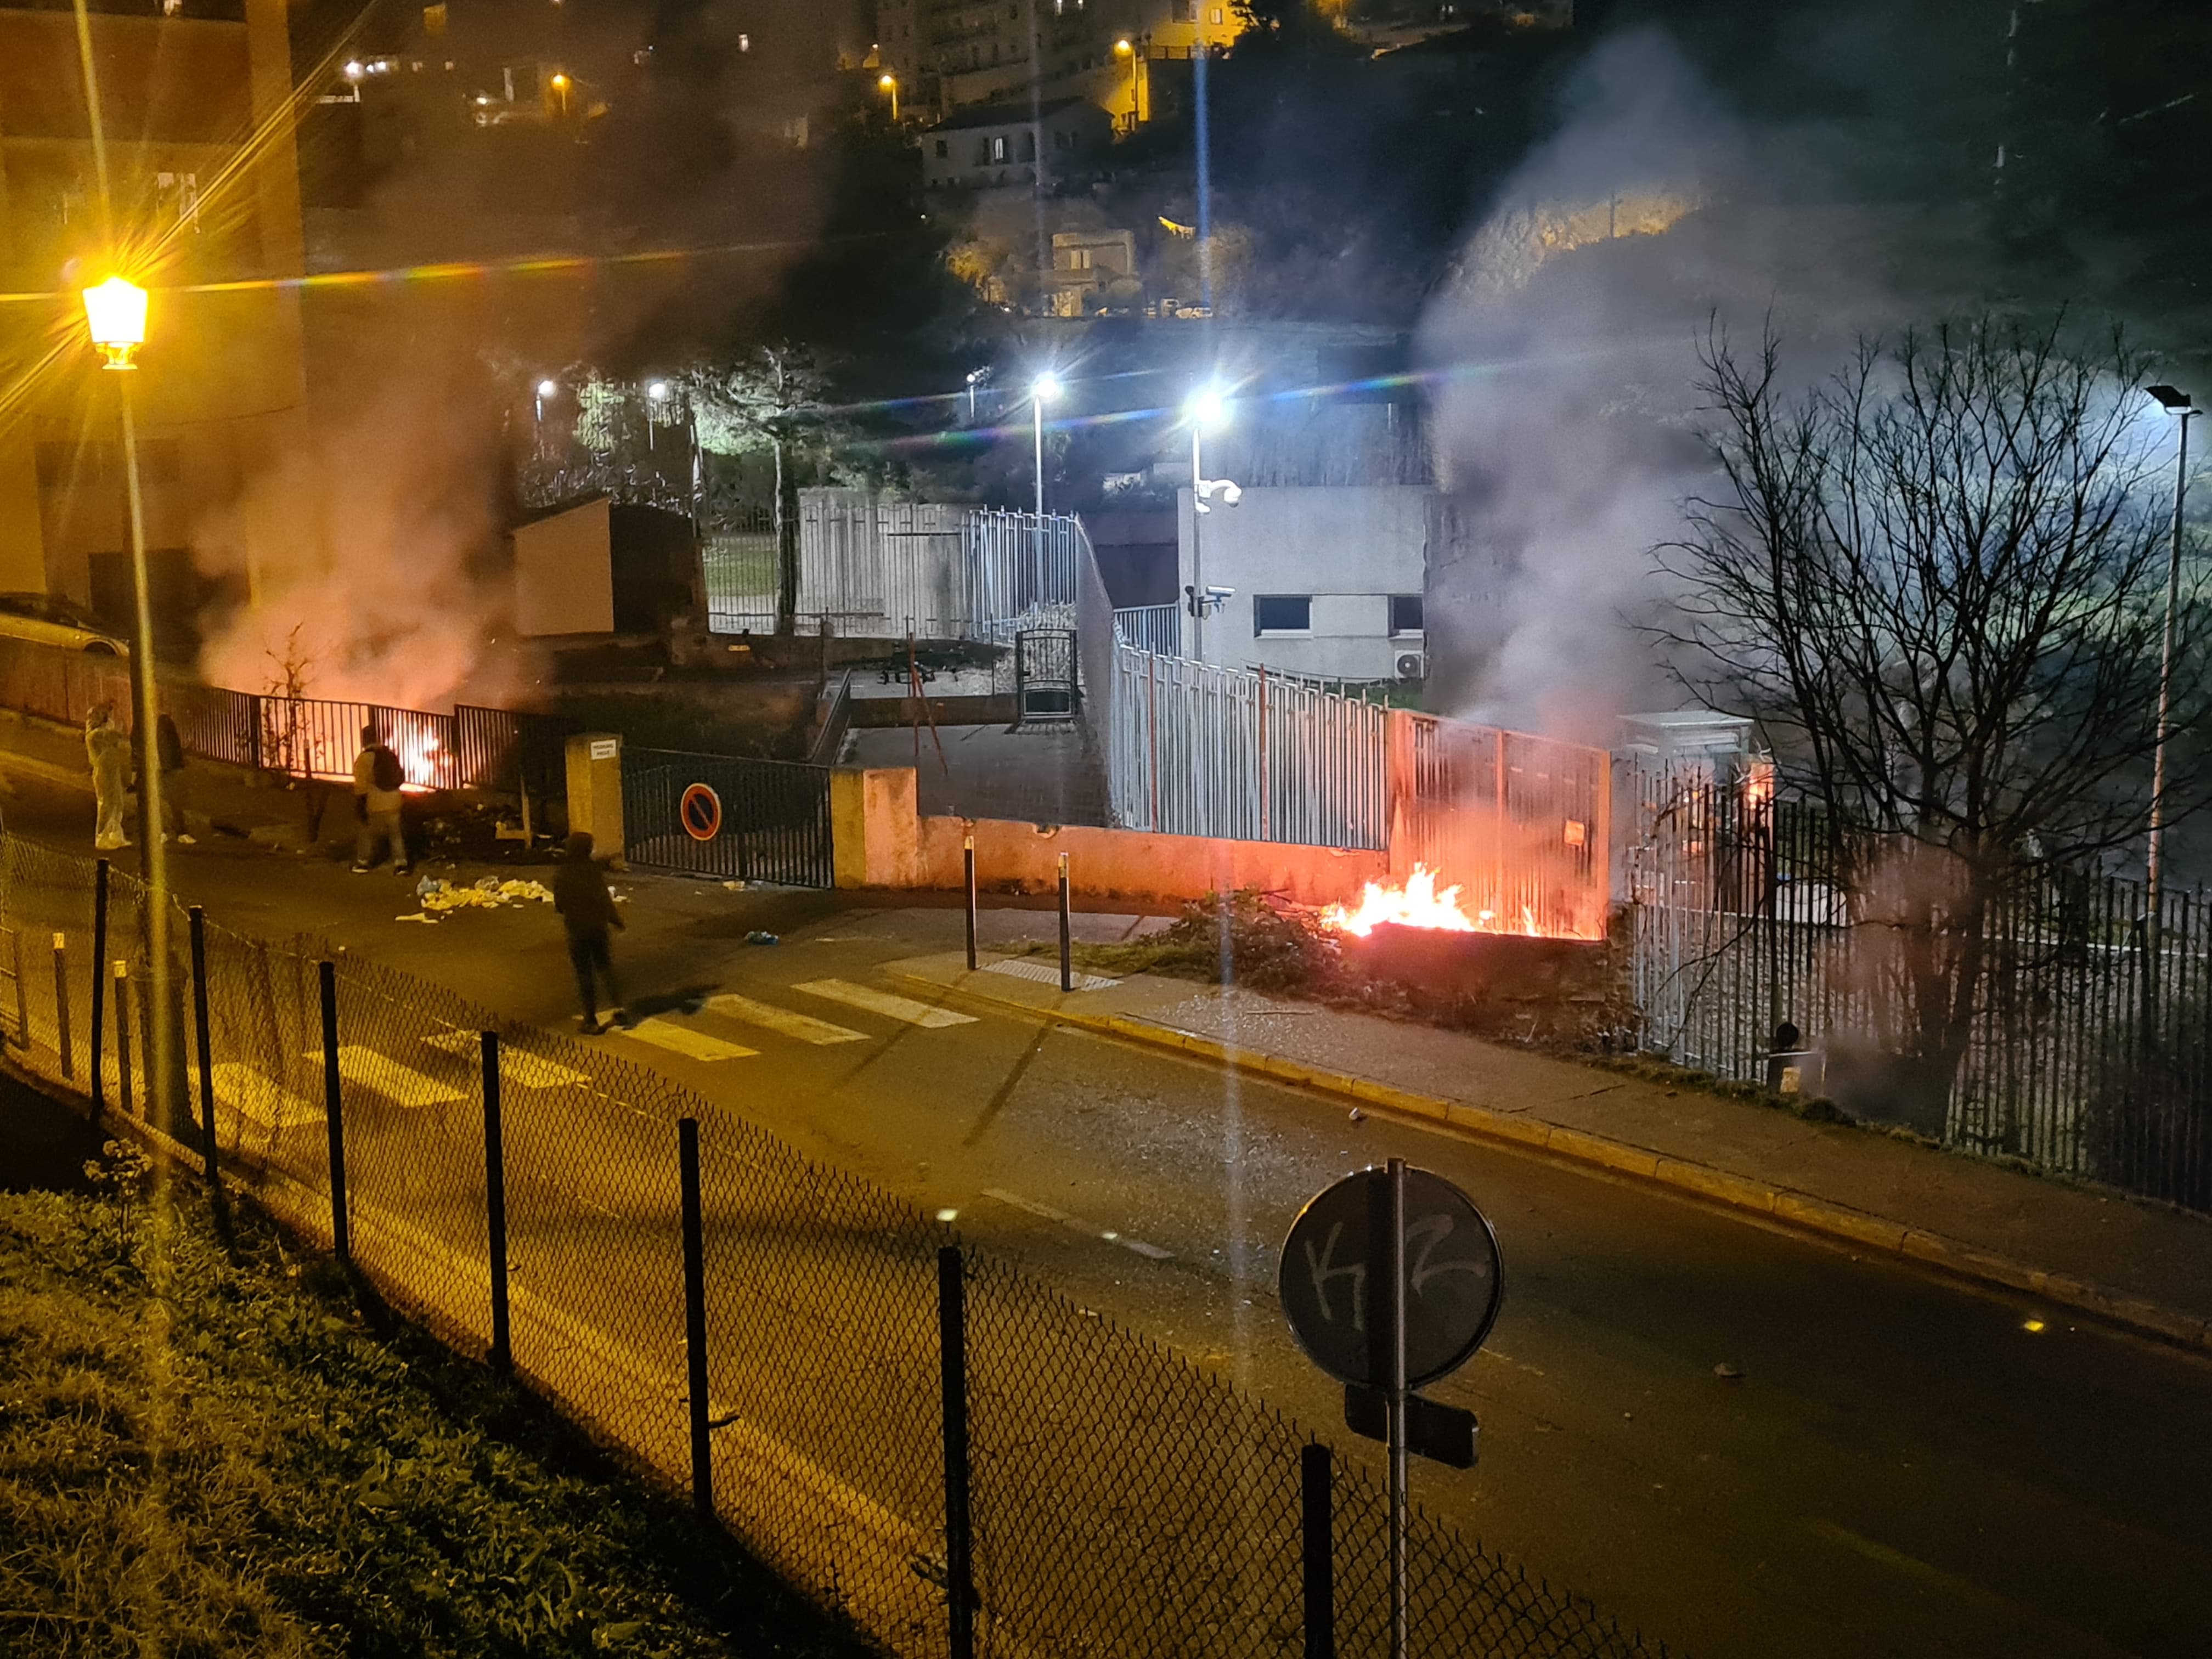 Les manifestants ont allumé des feux devant l'entrée latérale de la préfecture. Crédits Photo : Pierre-Manuel Pescetti